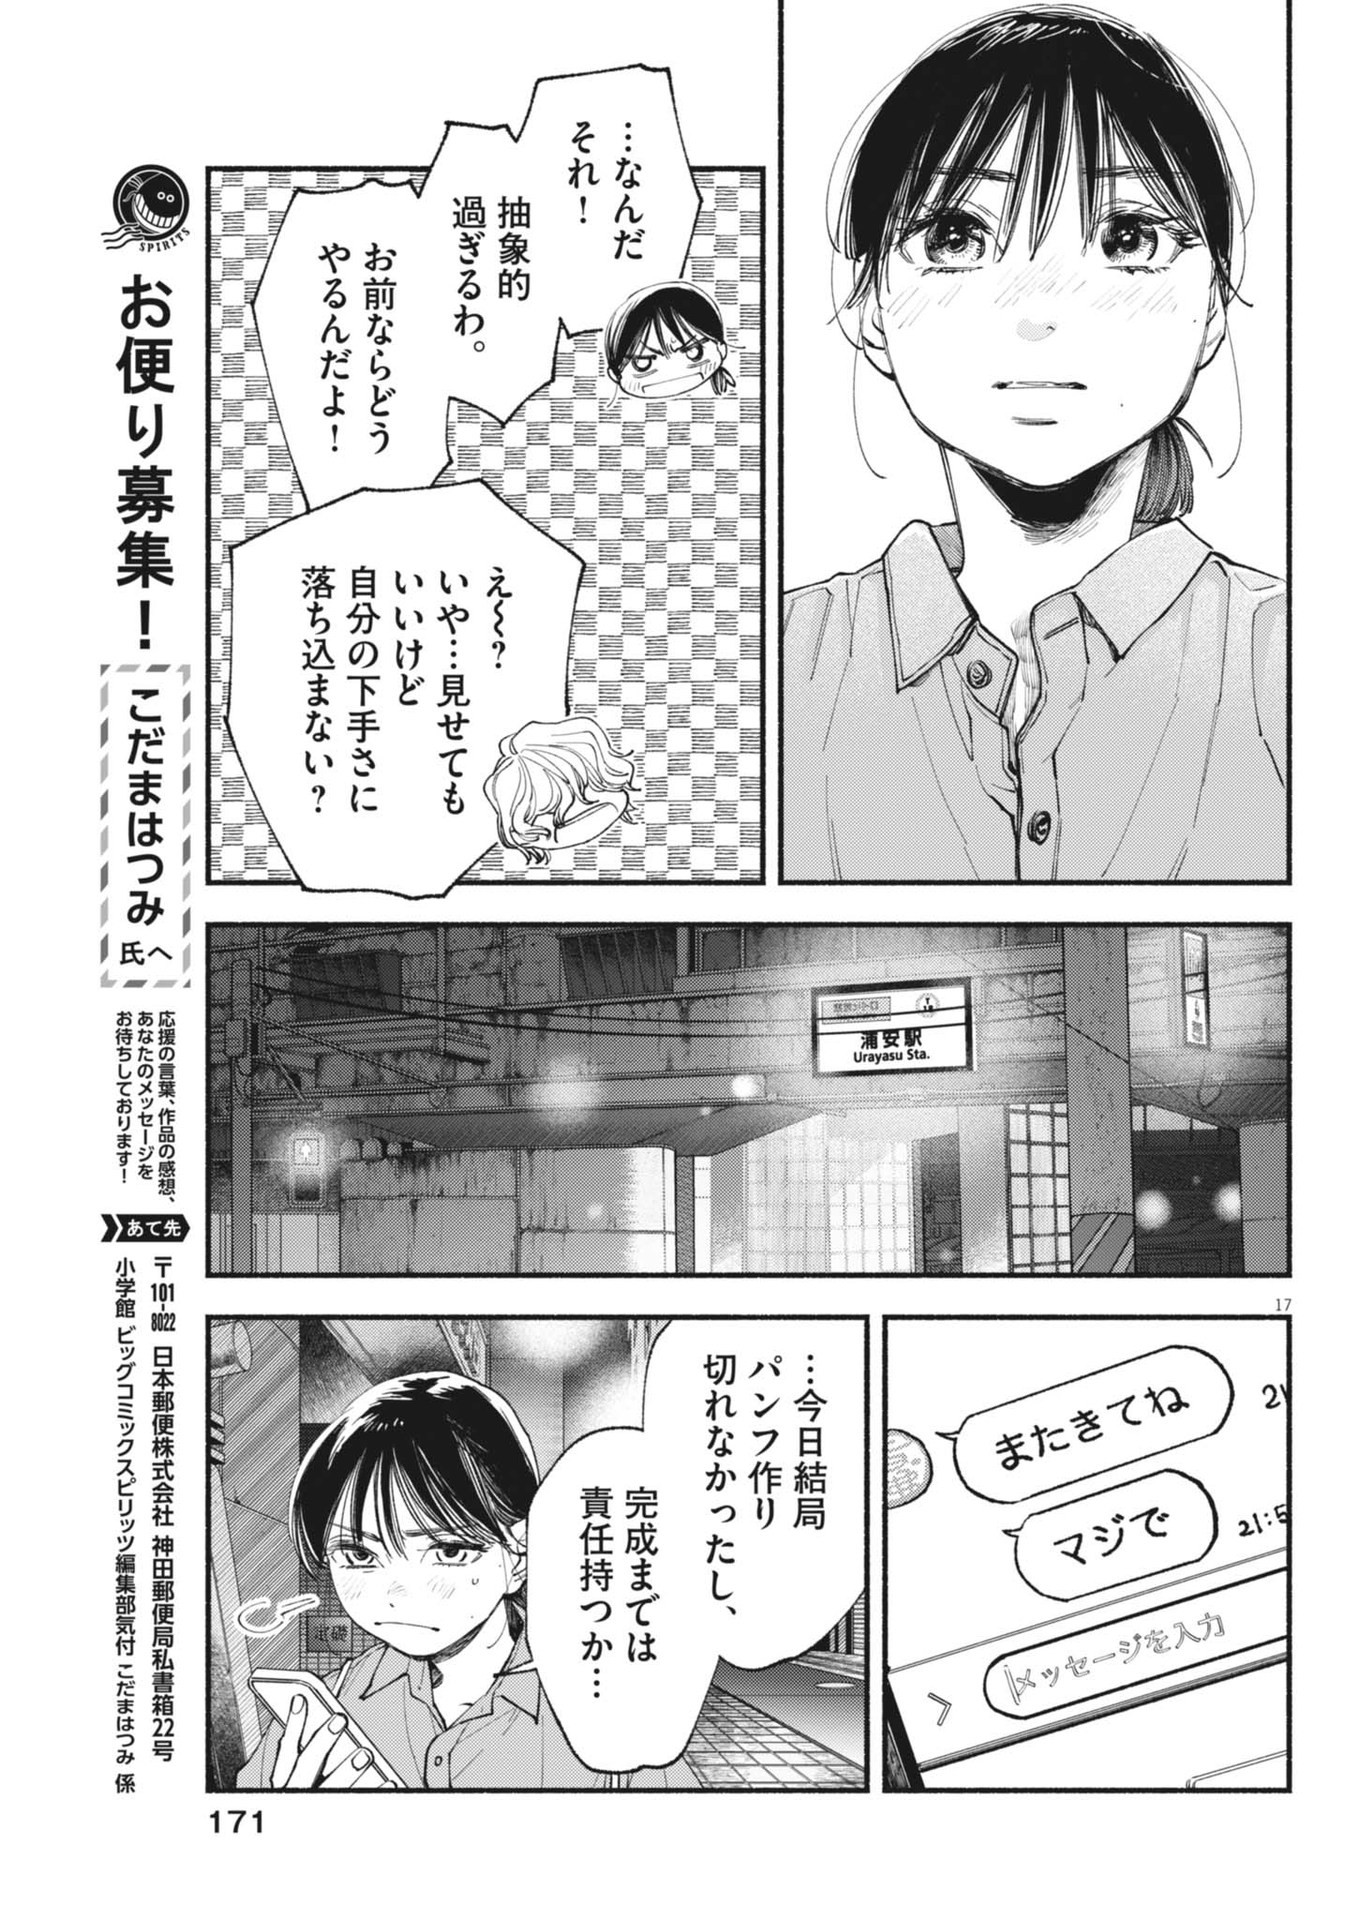 Konoyo wa Tatakau Kachi ga Aru  - Chapter 28 - Page 17